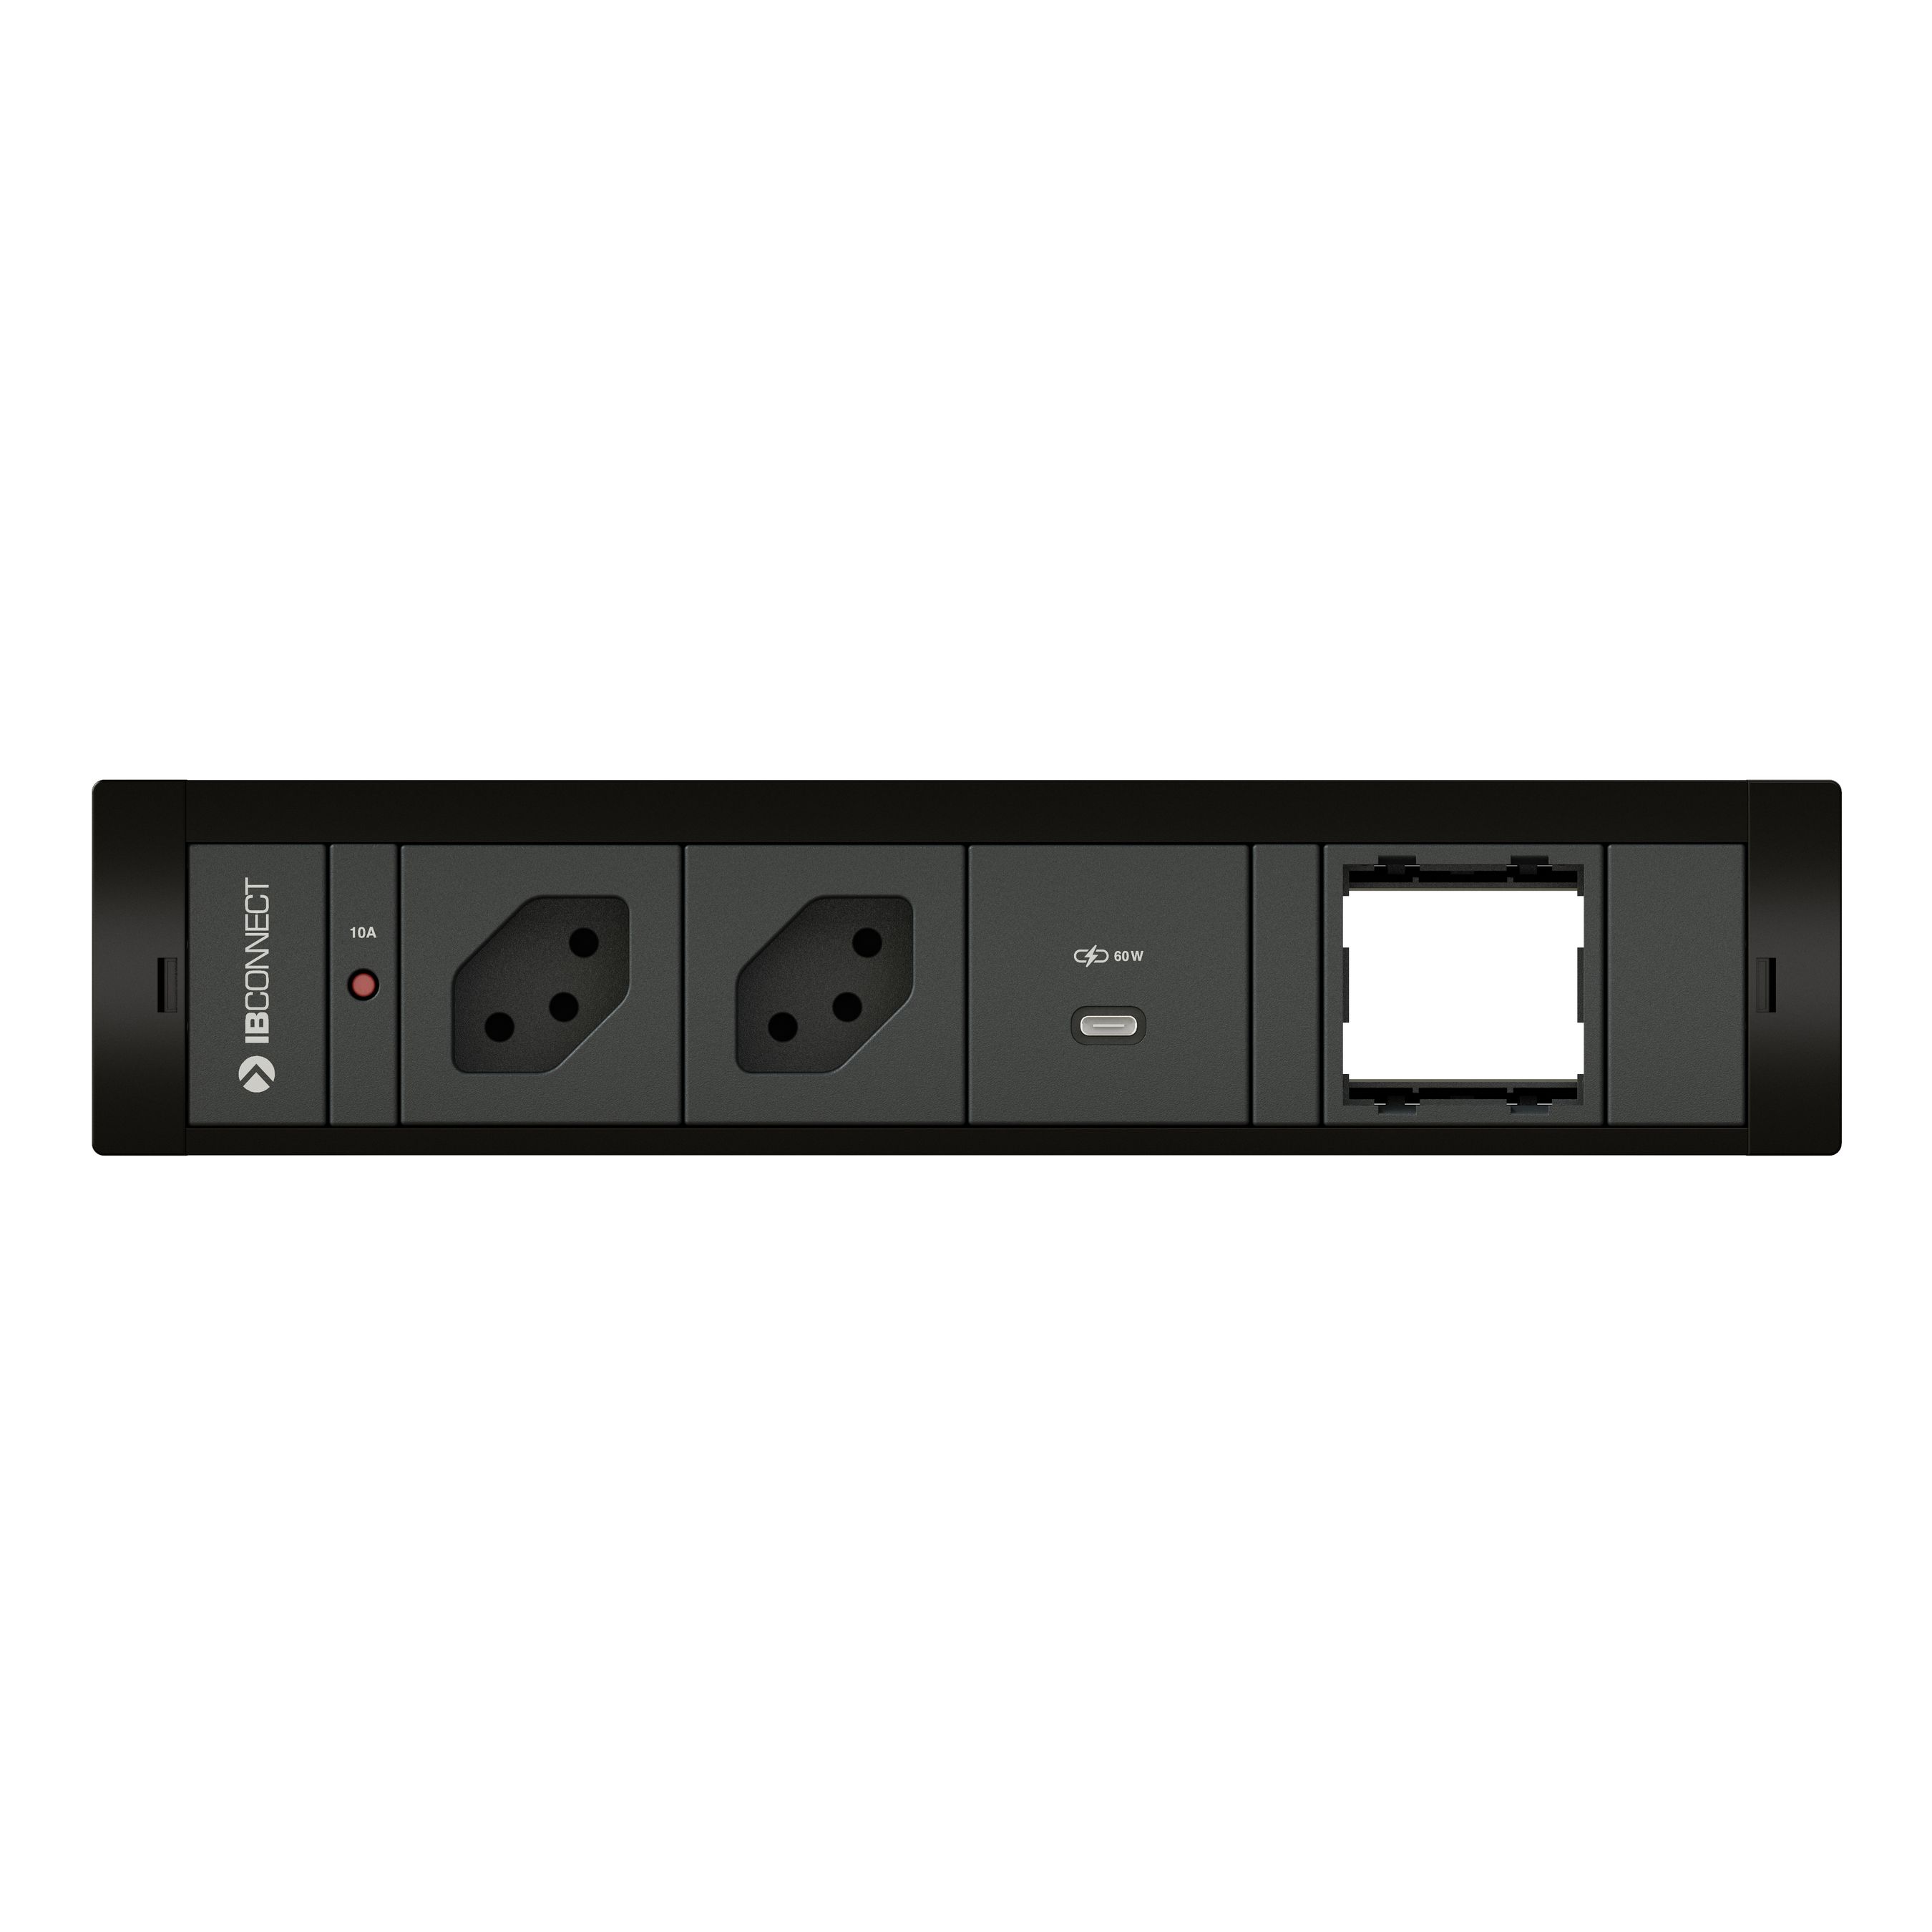 CUBOBOX bloc multiprise noir M4 2x type 13 1x USB-C 60W 1x vide